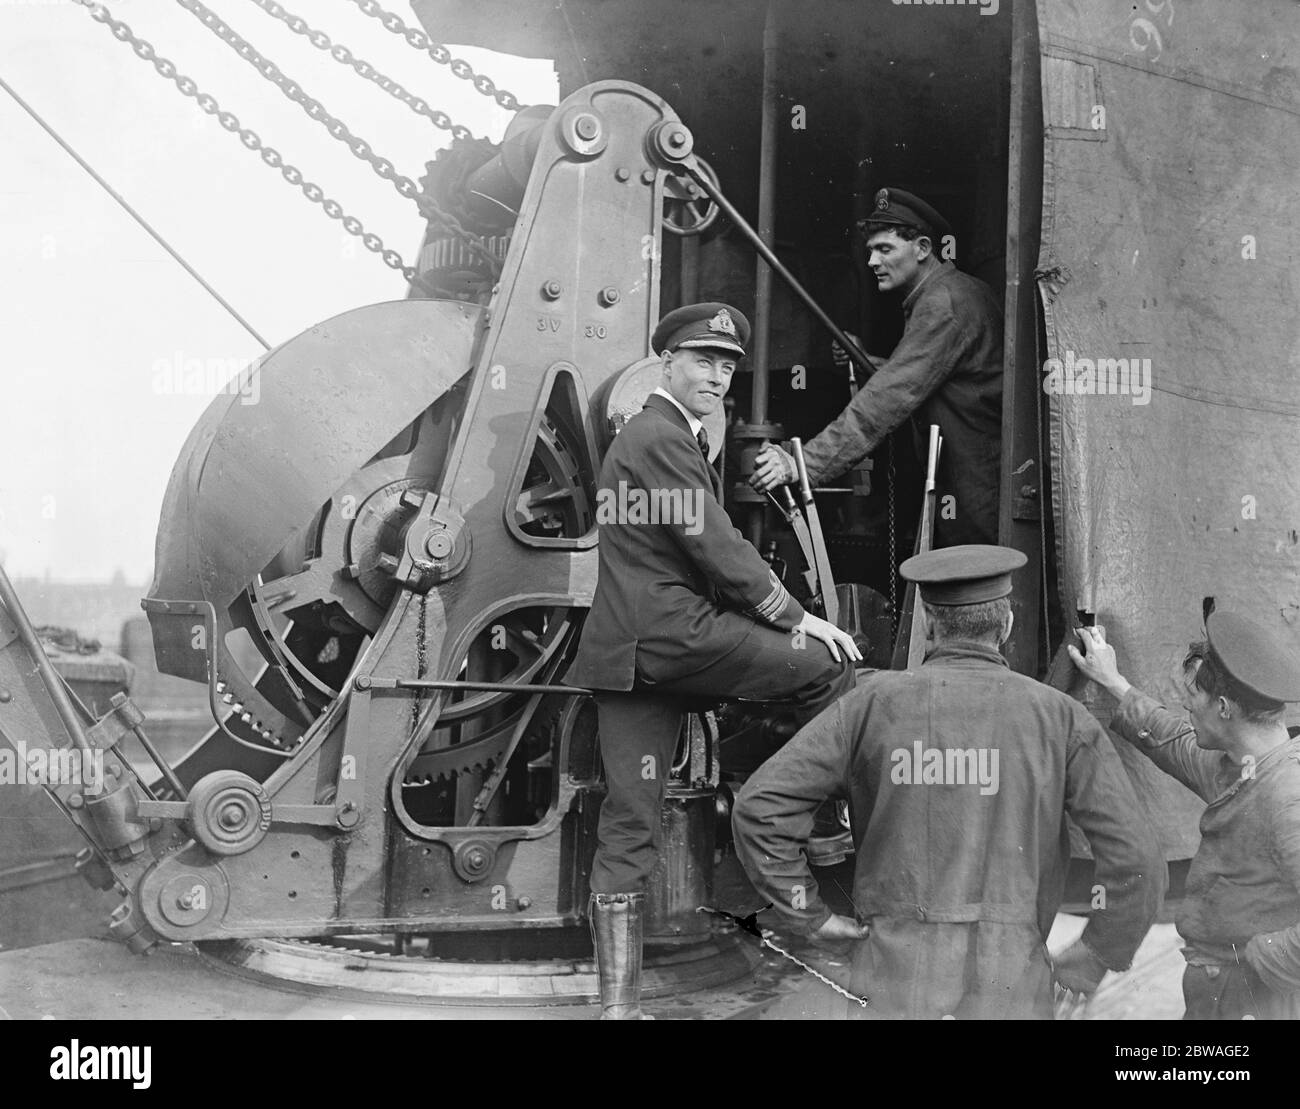 Marine Männer an der Nine Elms Goods Station, London. Kommandant A W Smith leitet die Operationen von der Winde, die von einem kleinen Offizier betrieben wird. Oktober 1919 Stockfoto